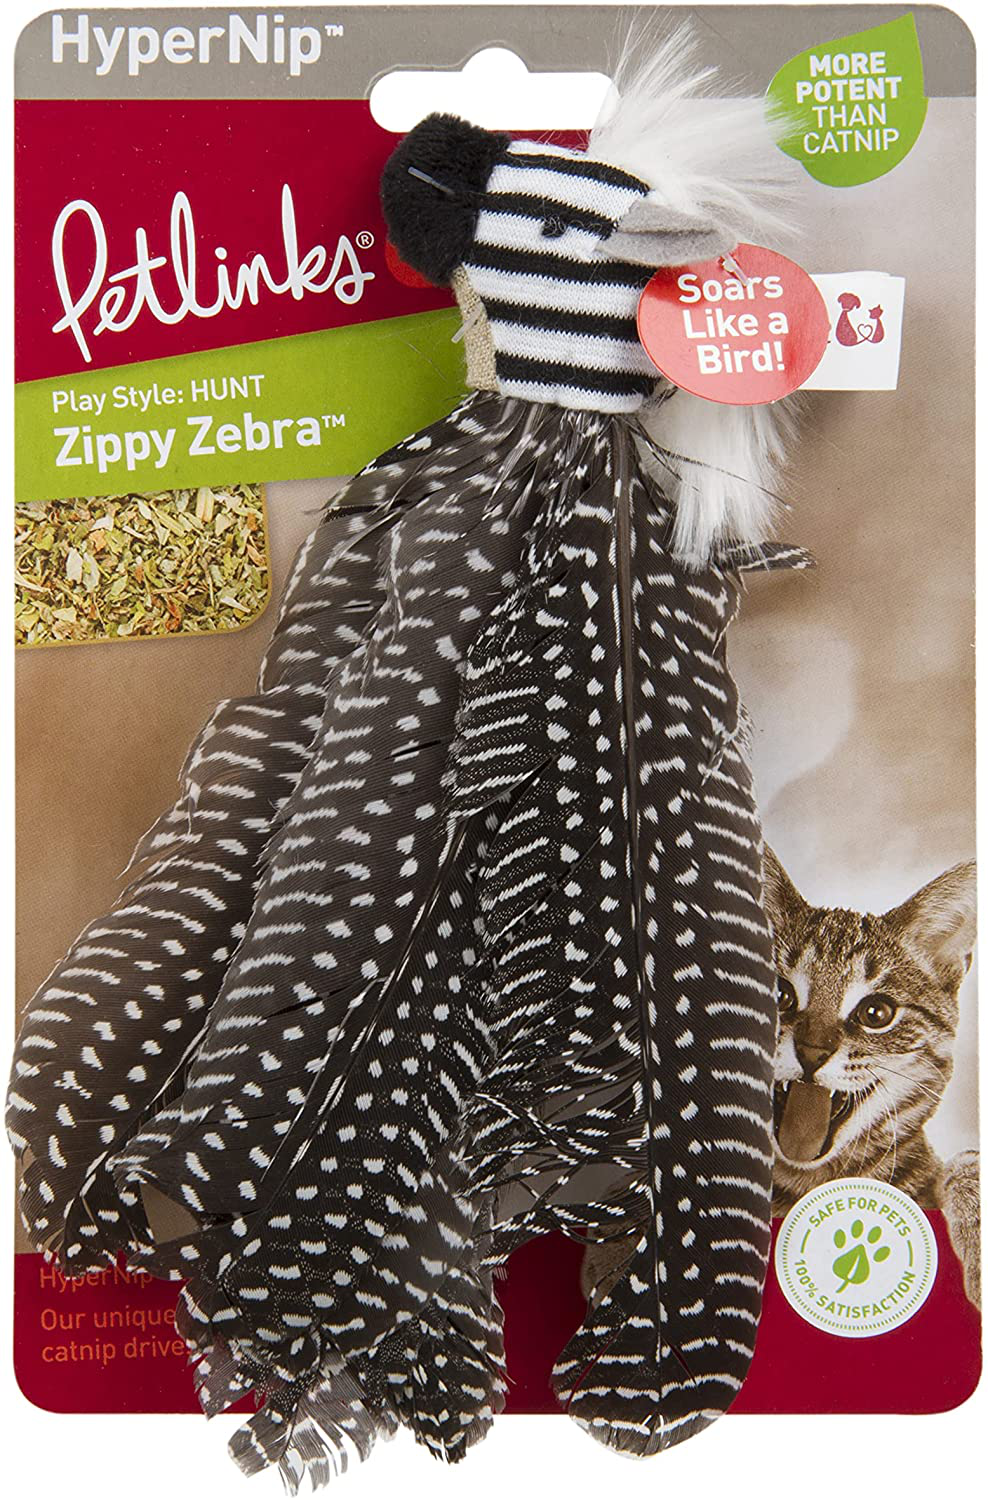 Petlinks System Zippy Zebra Cat Toy Animals & Pet Supplies > Pet Supplies > Cat Supplies > Cat Toys Petlinks   